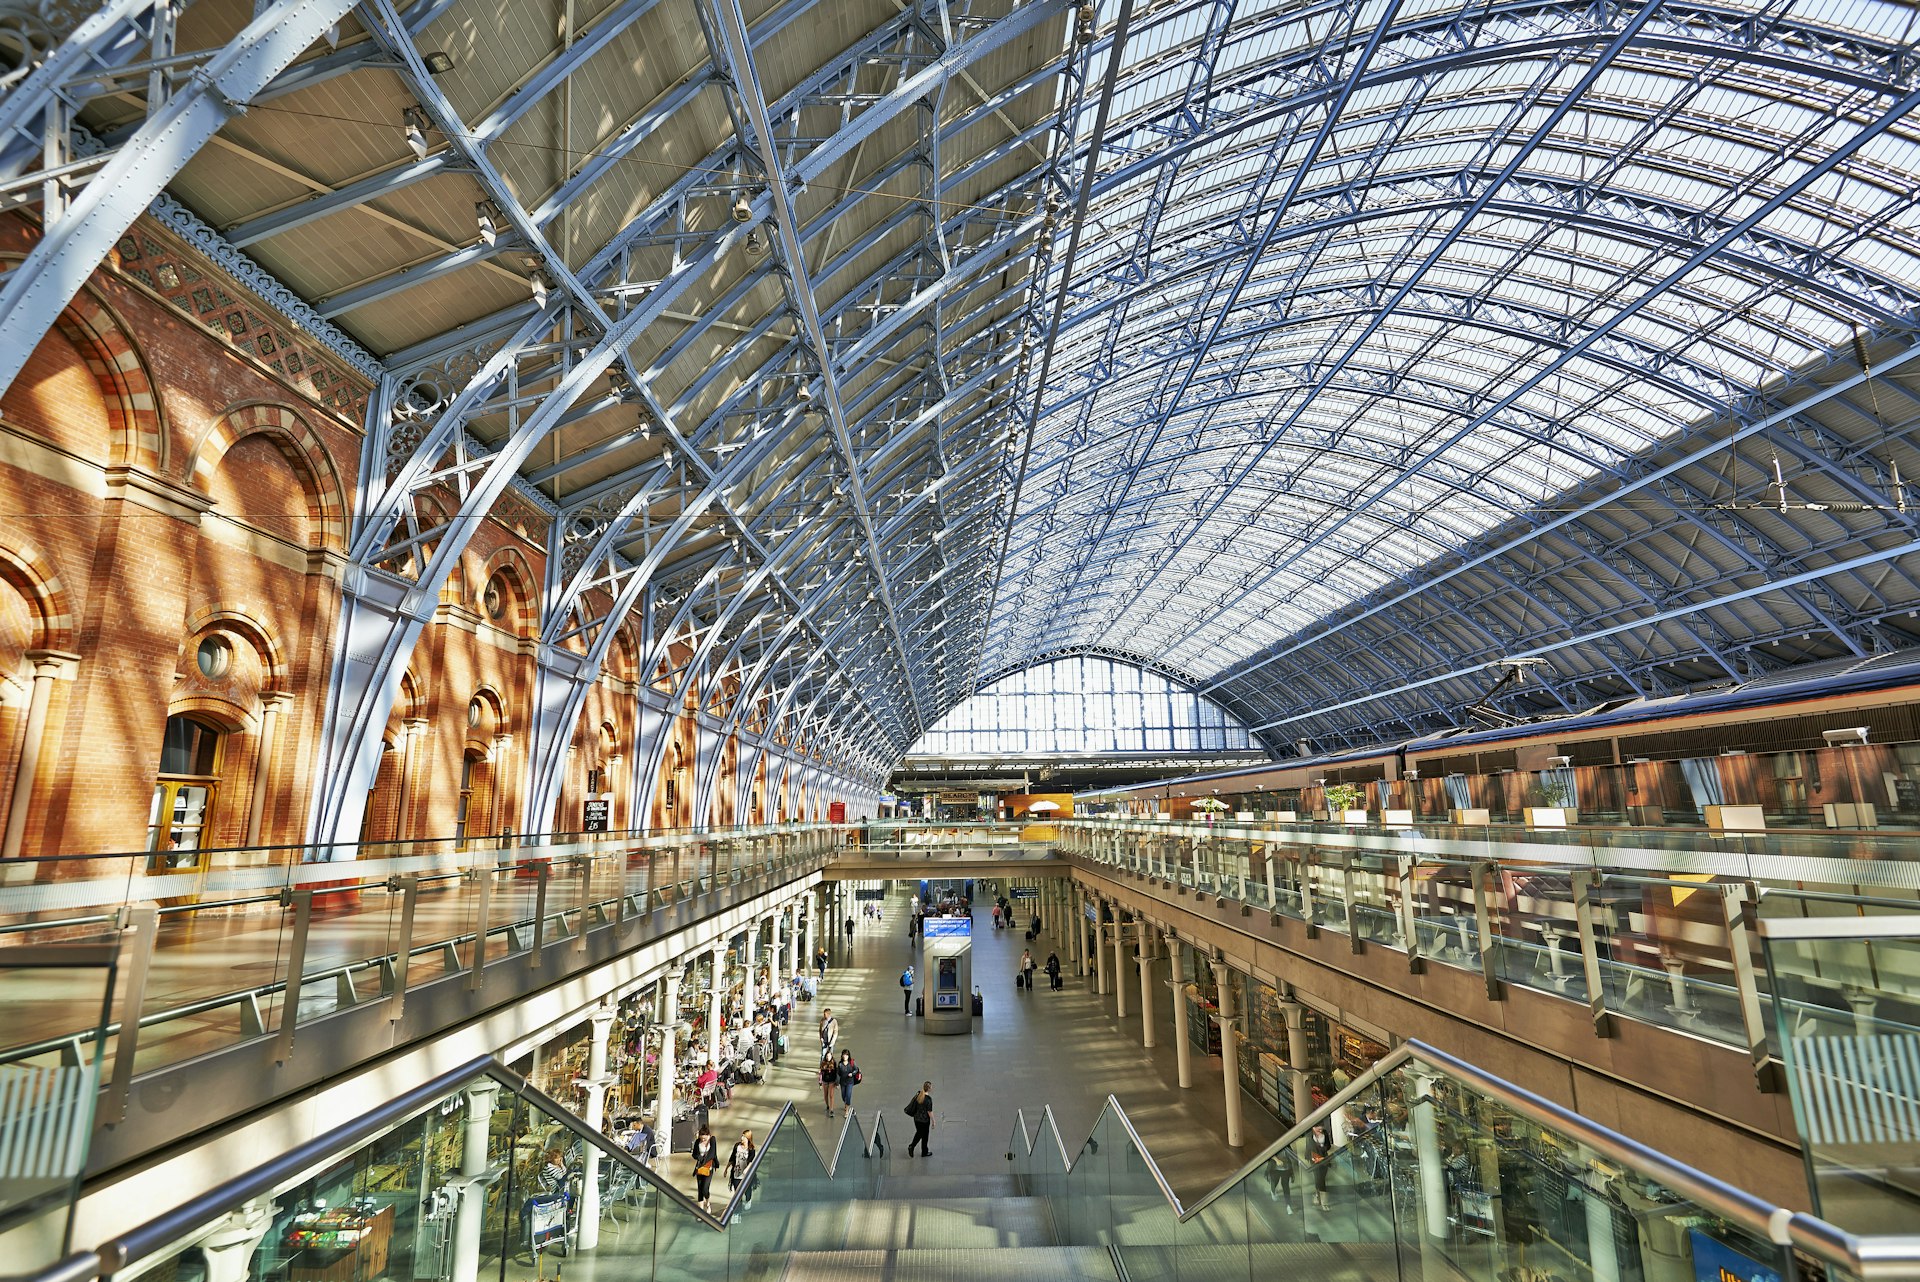 Inside St Pancras International train station in Kings Cross